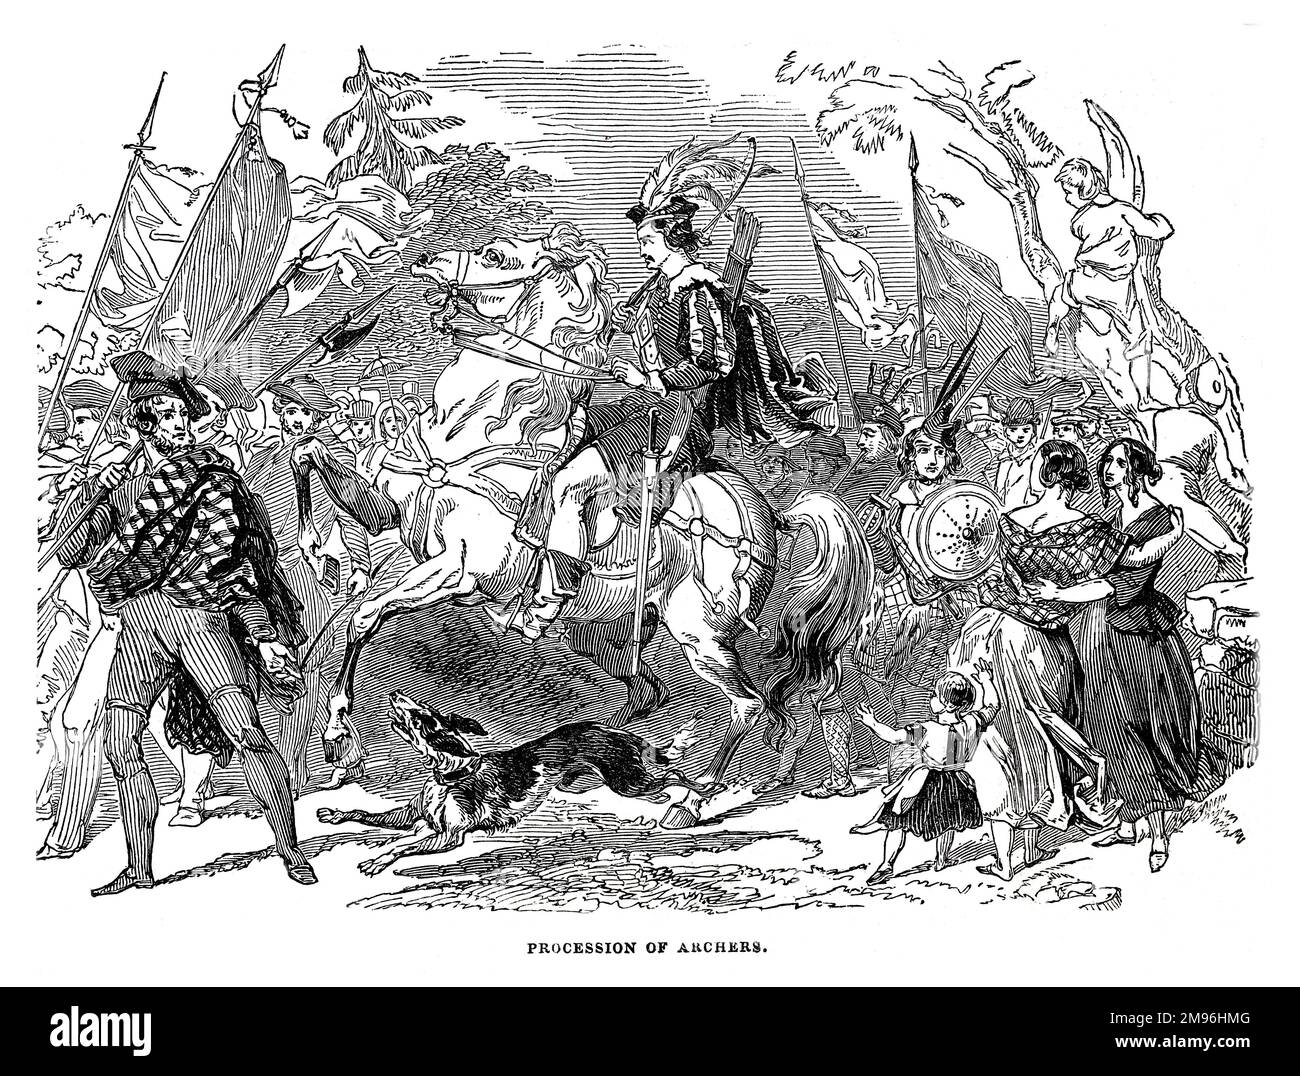 Festival de Burns en Ayr, 1844: Procesión de Arqueros. Ilustración en blanco y negro del London Illustrated News; agosto de 1844. Foto de stock